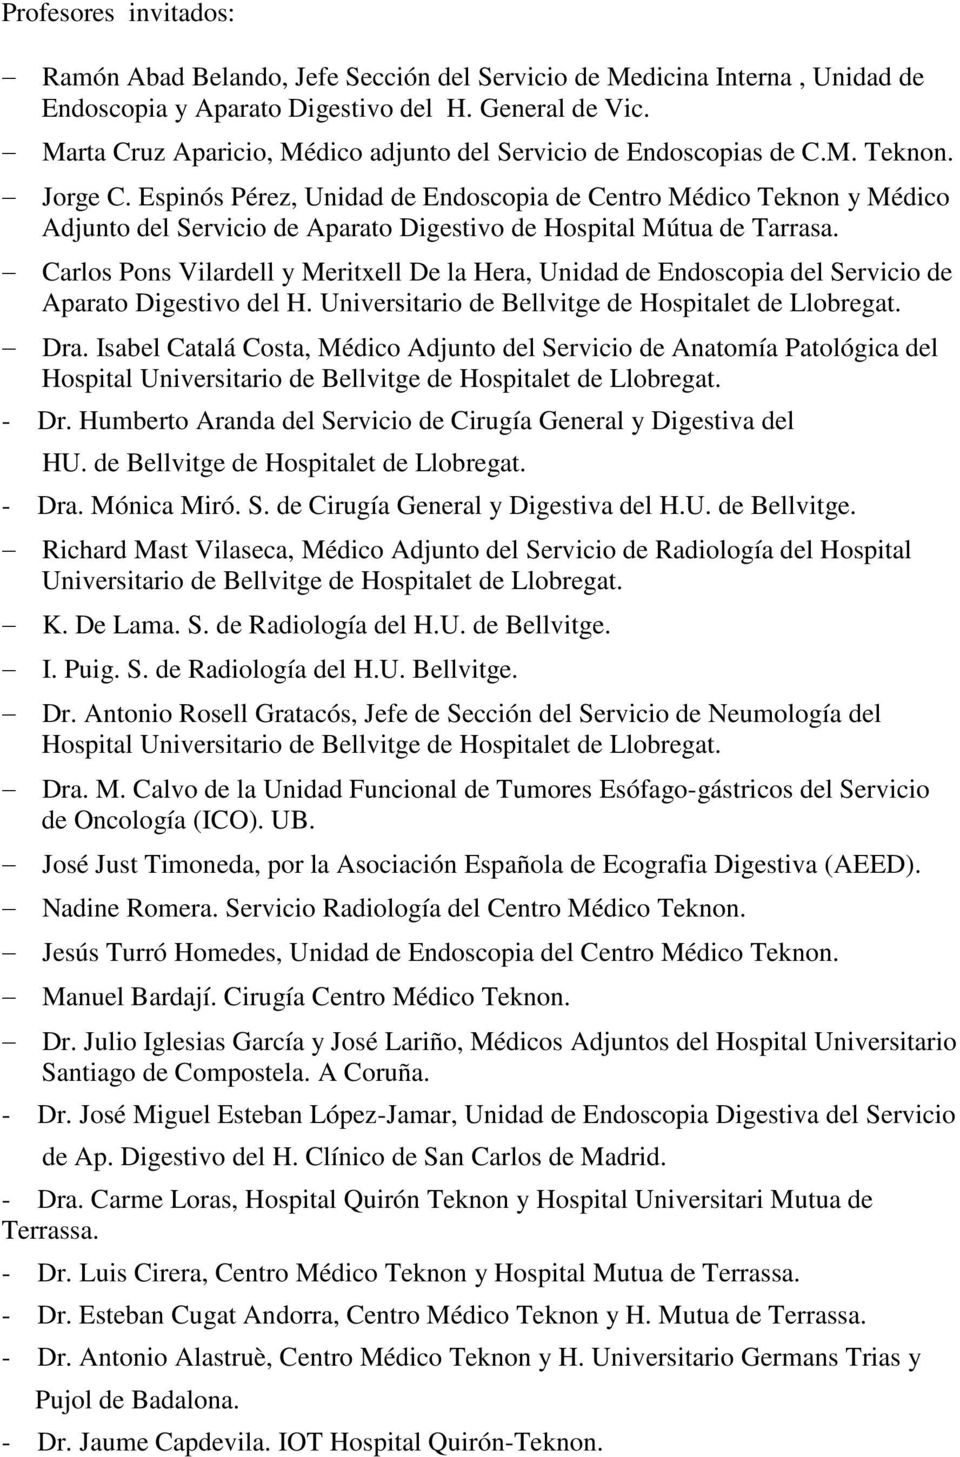 Espinós Pérez, Unidad de Endoscopia de Centro Médico Teknon y Médico Adjunto del Servicio de Aparato Digestivo de Hospital Mútua de Tarrasa.